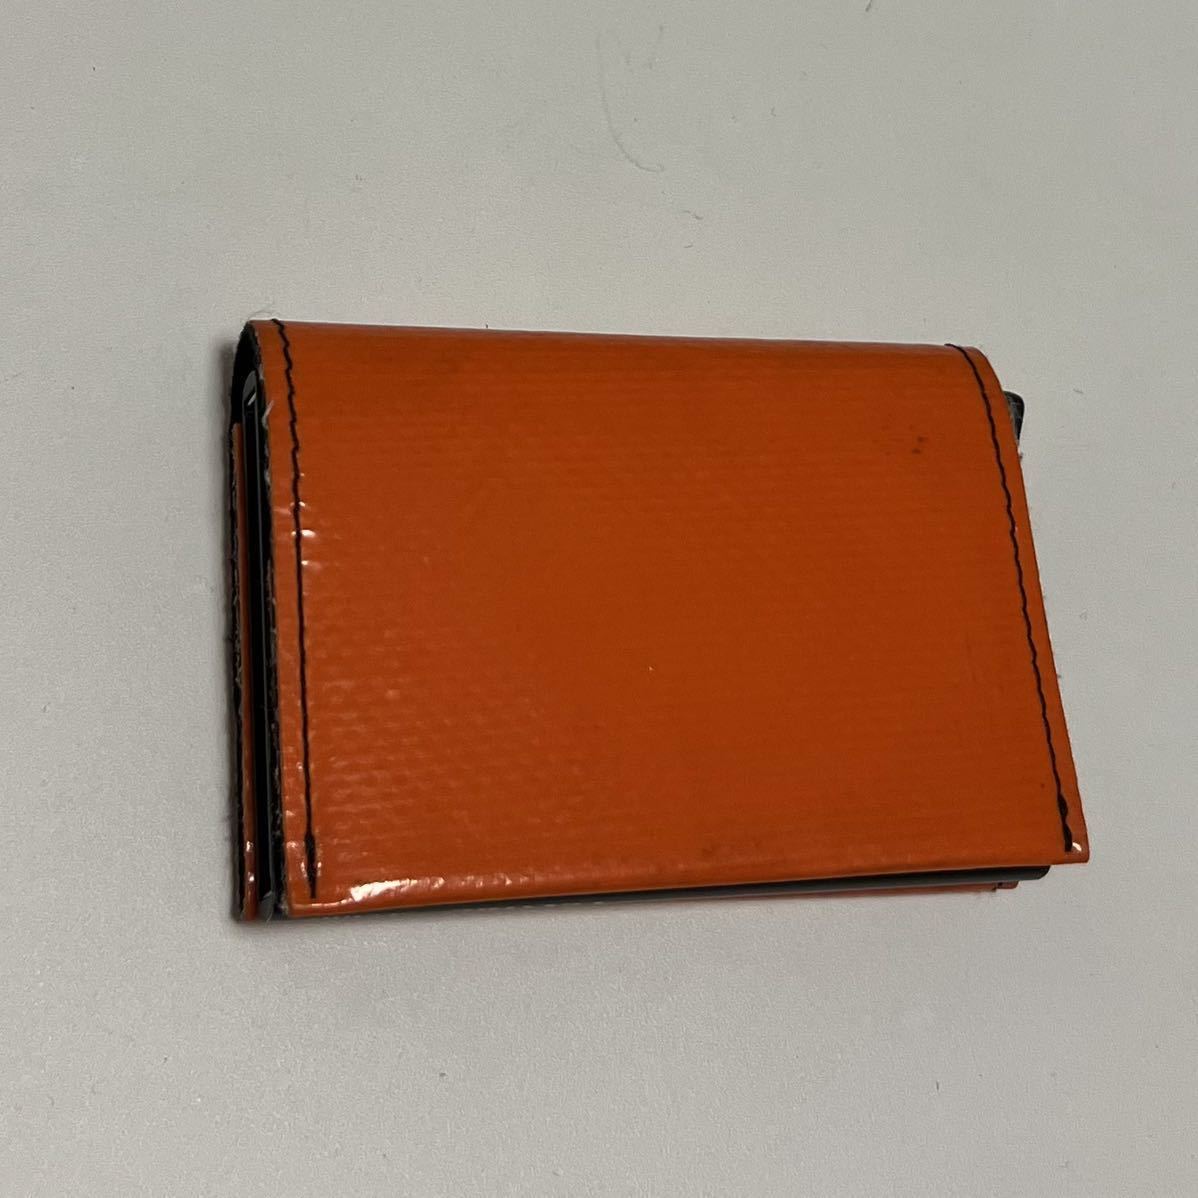 FREITAG × SECRID フライターグ Cardprotector Wallet カードウォレット 財布 カードケース オレンジ色 ユニセックス